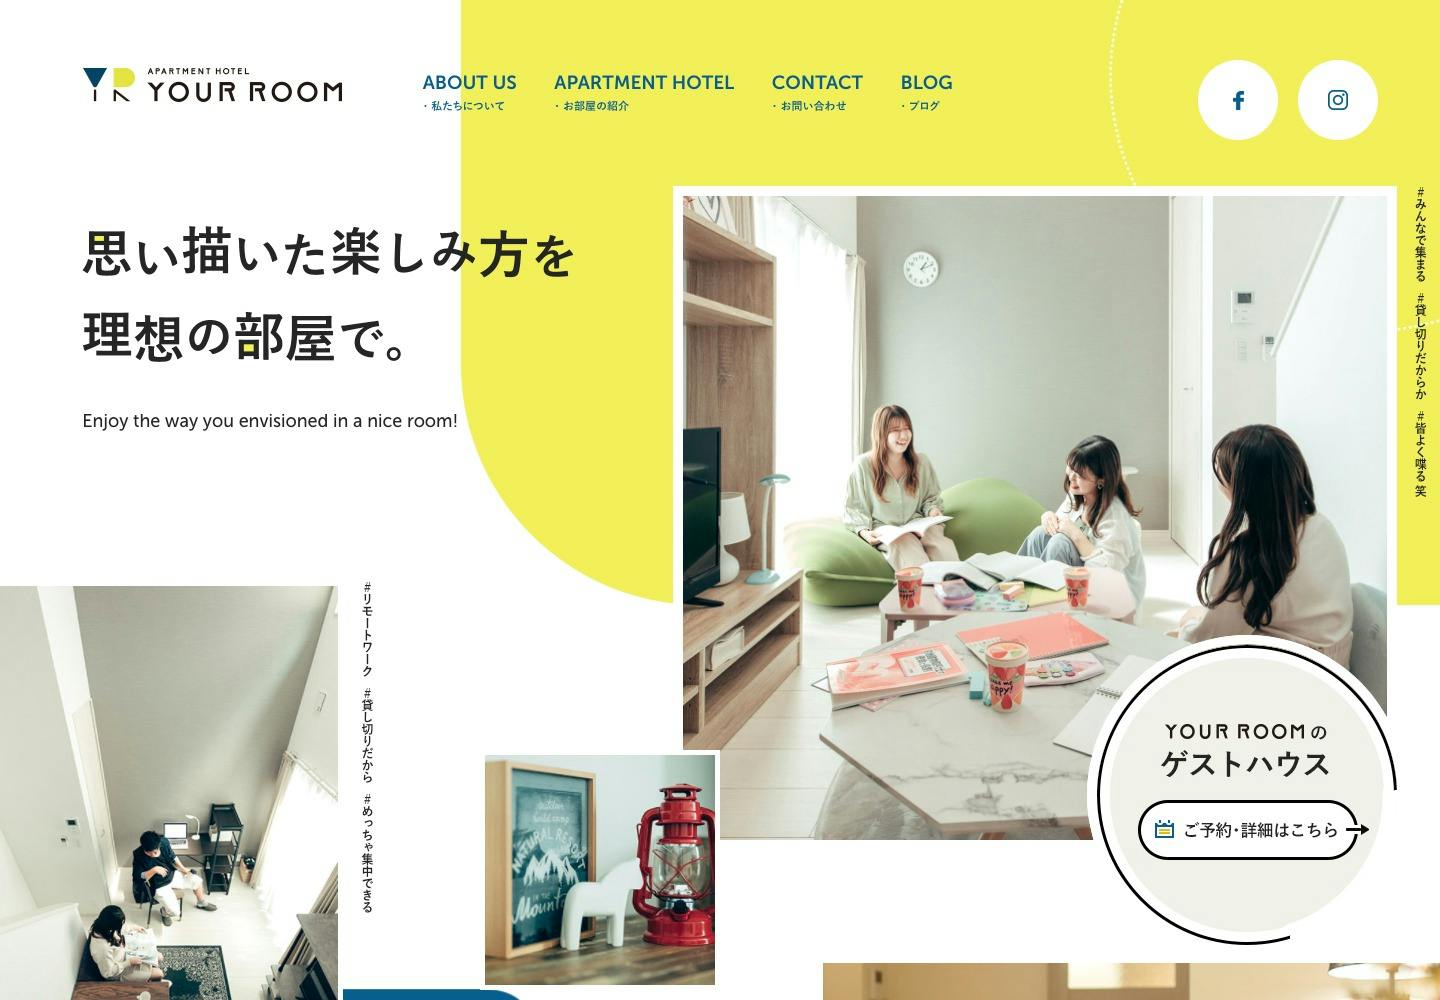 Cover Image for 熊本のおしゃれなアパートメントホテル【YOUR ROOM】は旅行•デート•パーティーなど様々なシーンでご利用頂けます。